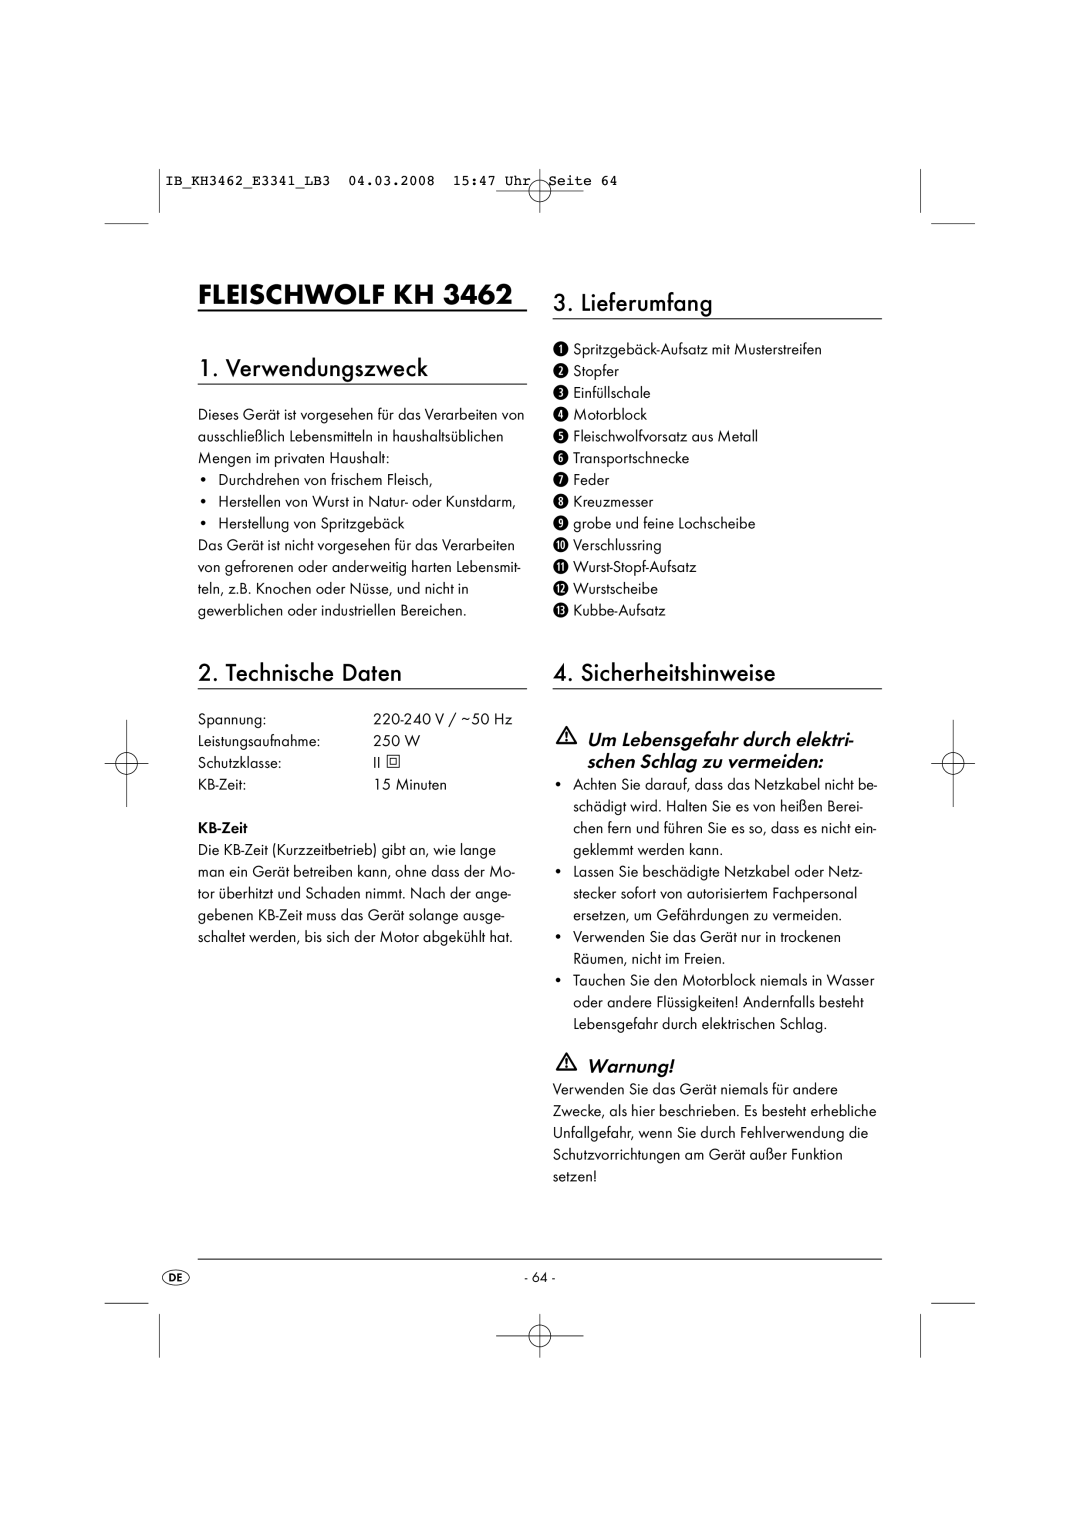 Kompernass KH3462-02/08-V1 manual Fleischwolf KH, Verwendungszweck, Lieferumfang, Technische Daten, Sicherheitshinweise 